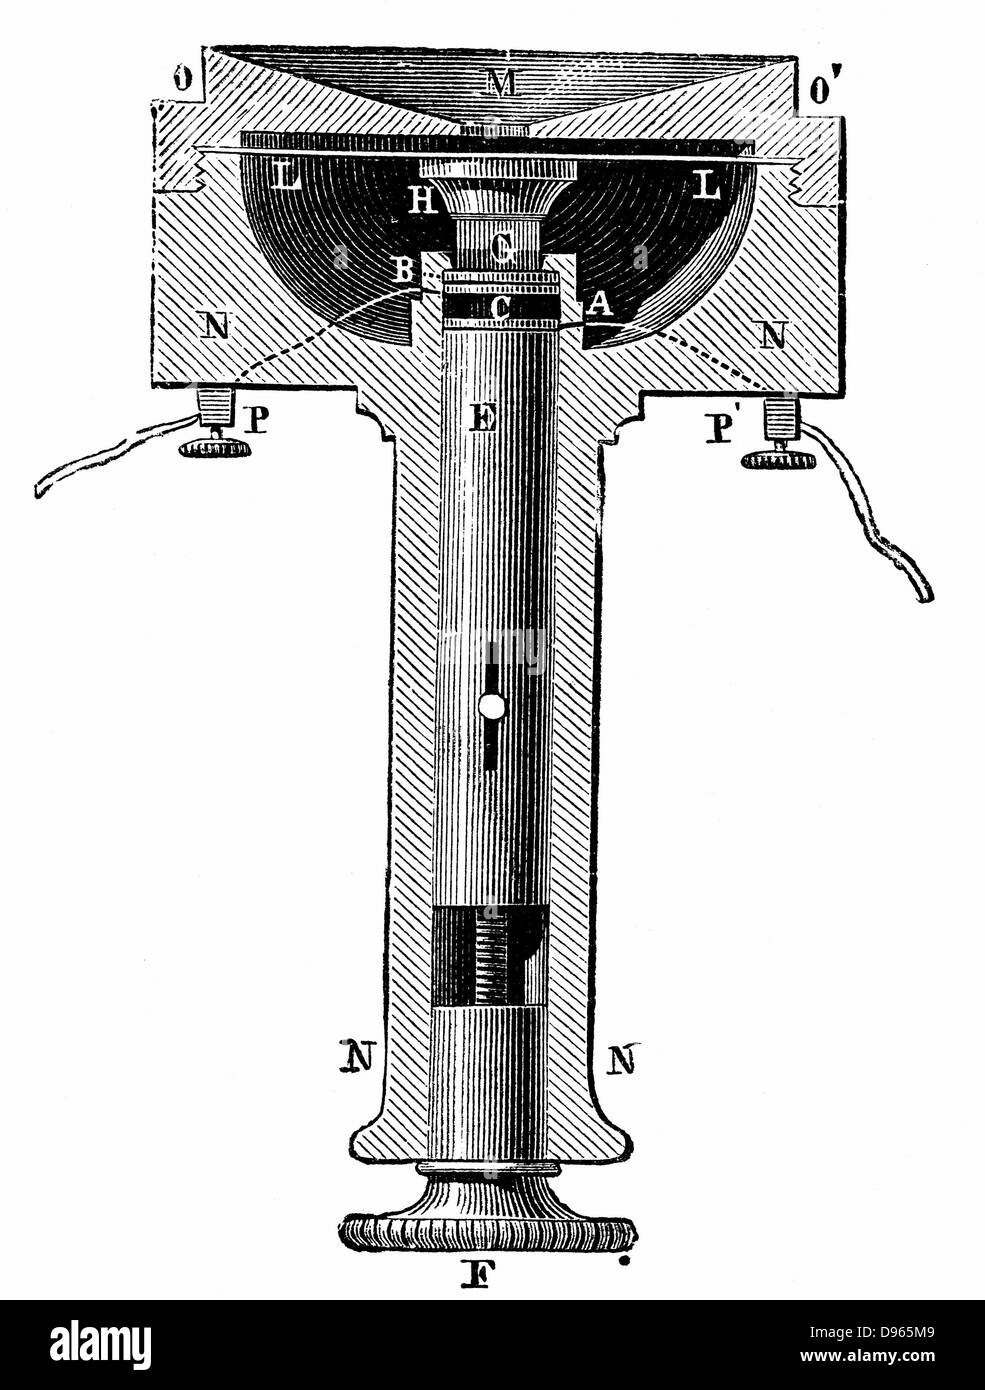 Échantillon de la lampe d'Edison-noir (carbone) transmetteur téléphonique (microphone). La gravure sur bois c1891. Banque D'Images